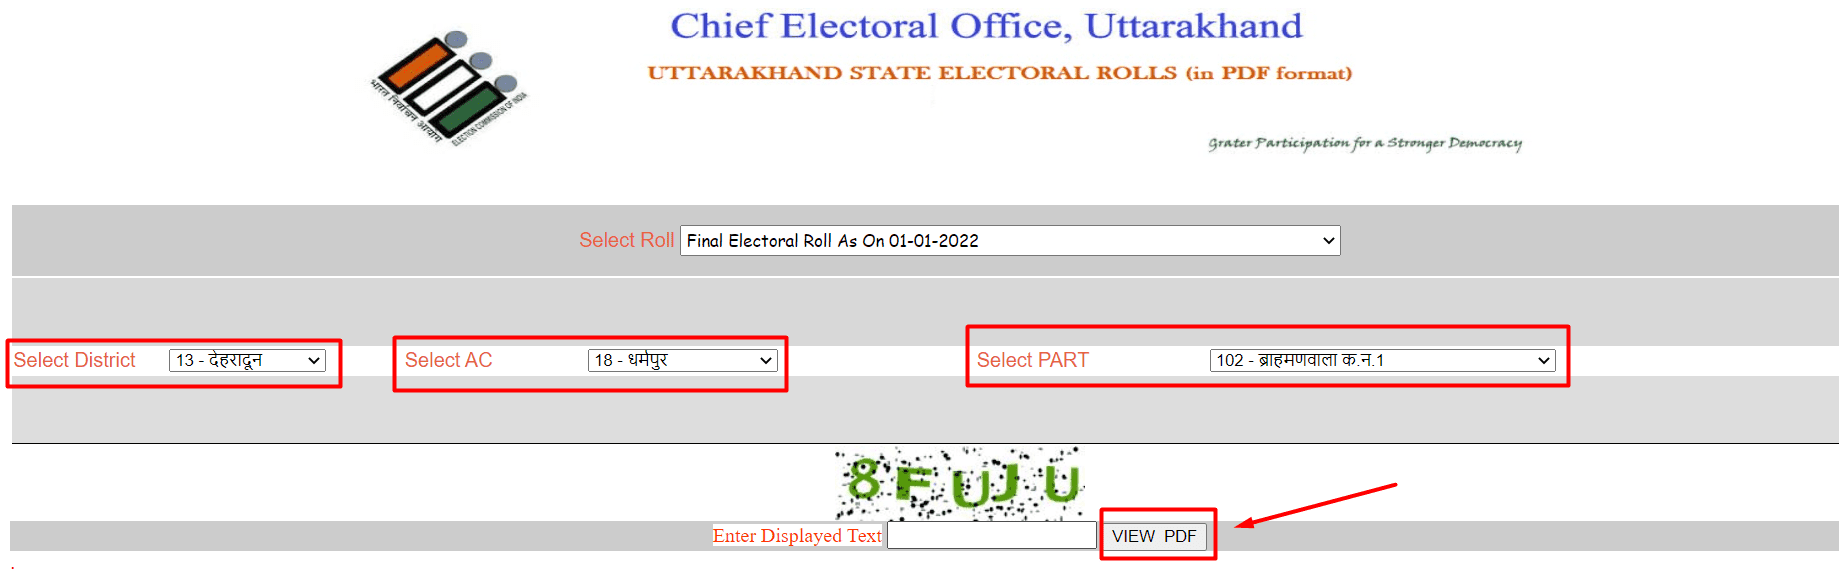 Uttarakhand Voter List PDF Online Download 